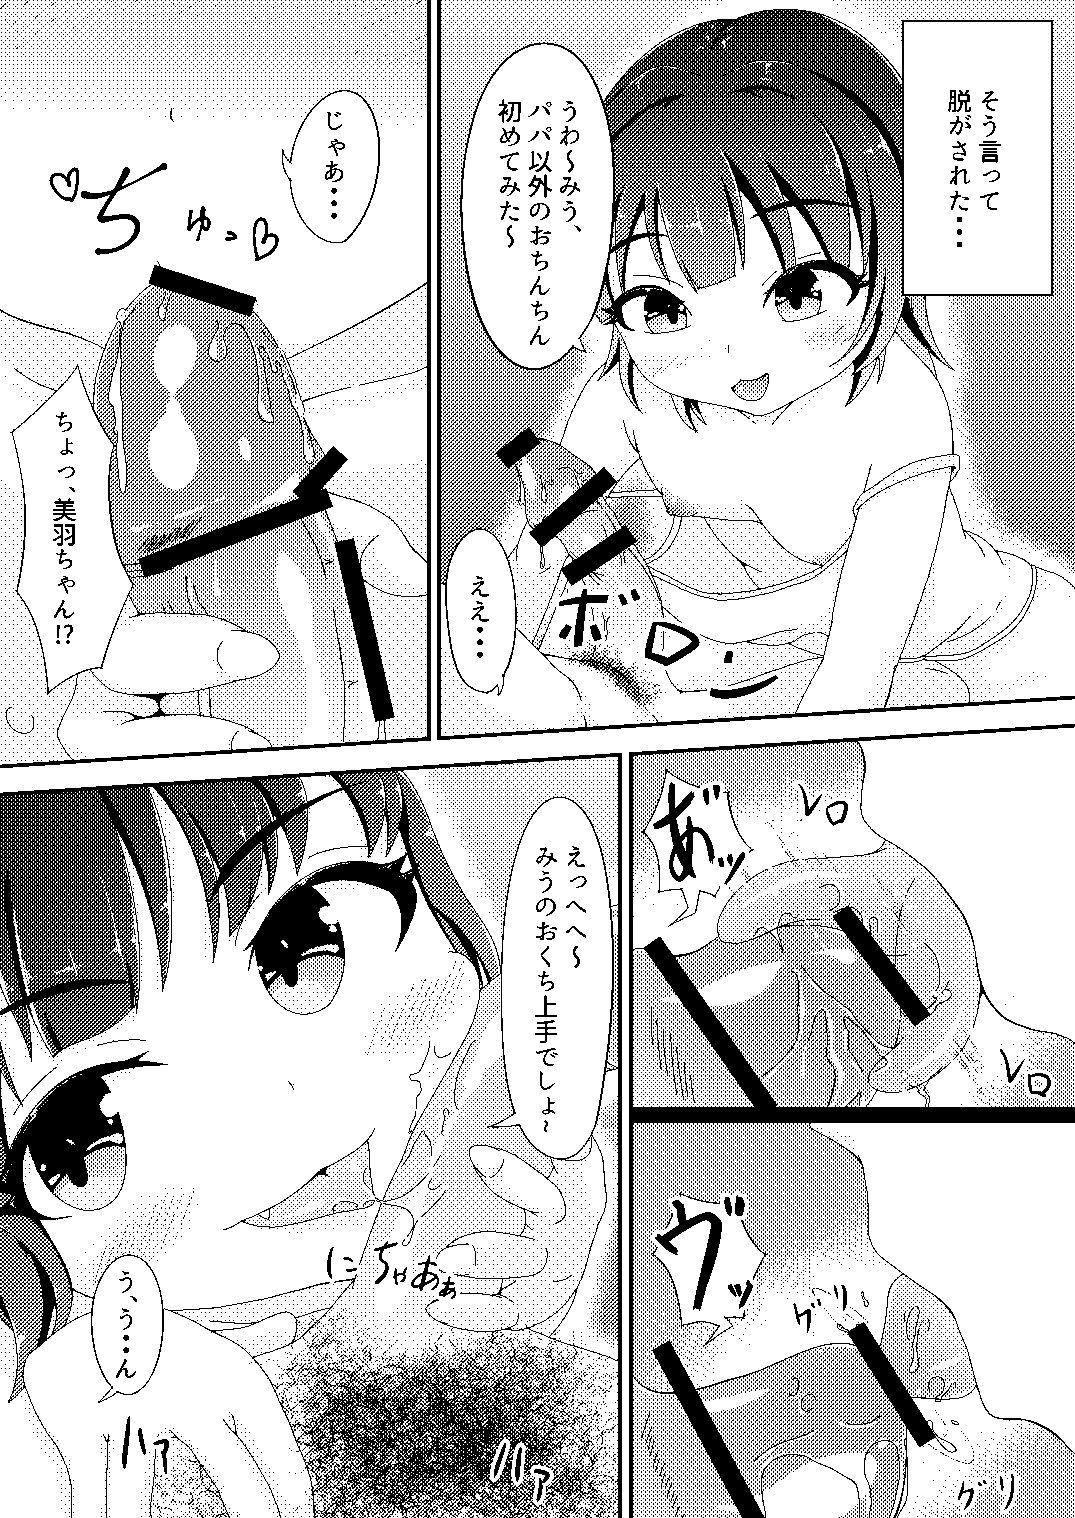 Penetration Original Manga - Original Clitoris - Page 5